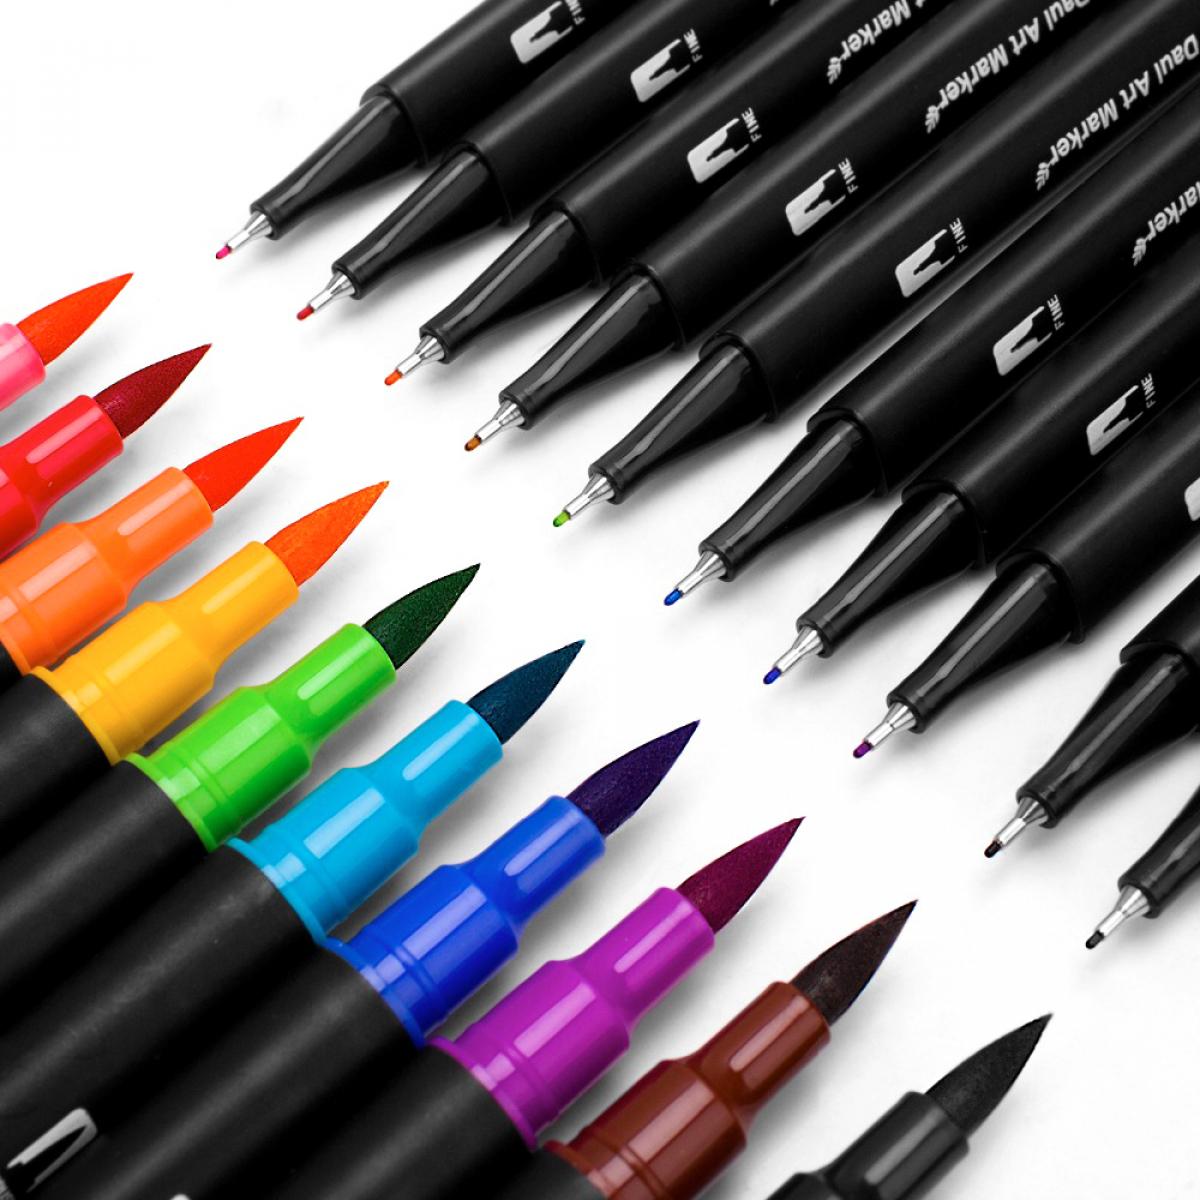 Set di 36 pennarelli a doppia estremità BLACK LINEcolor, punta fine 0,4 mm e punta pennello acquerello professionale. Forma tonda ergonomica per scritte, calligrafia, illustrazioni...